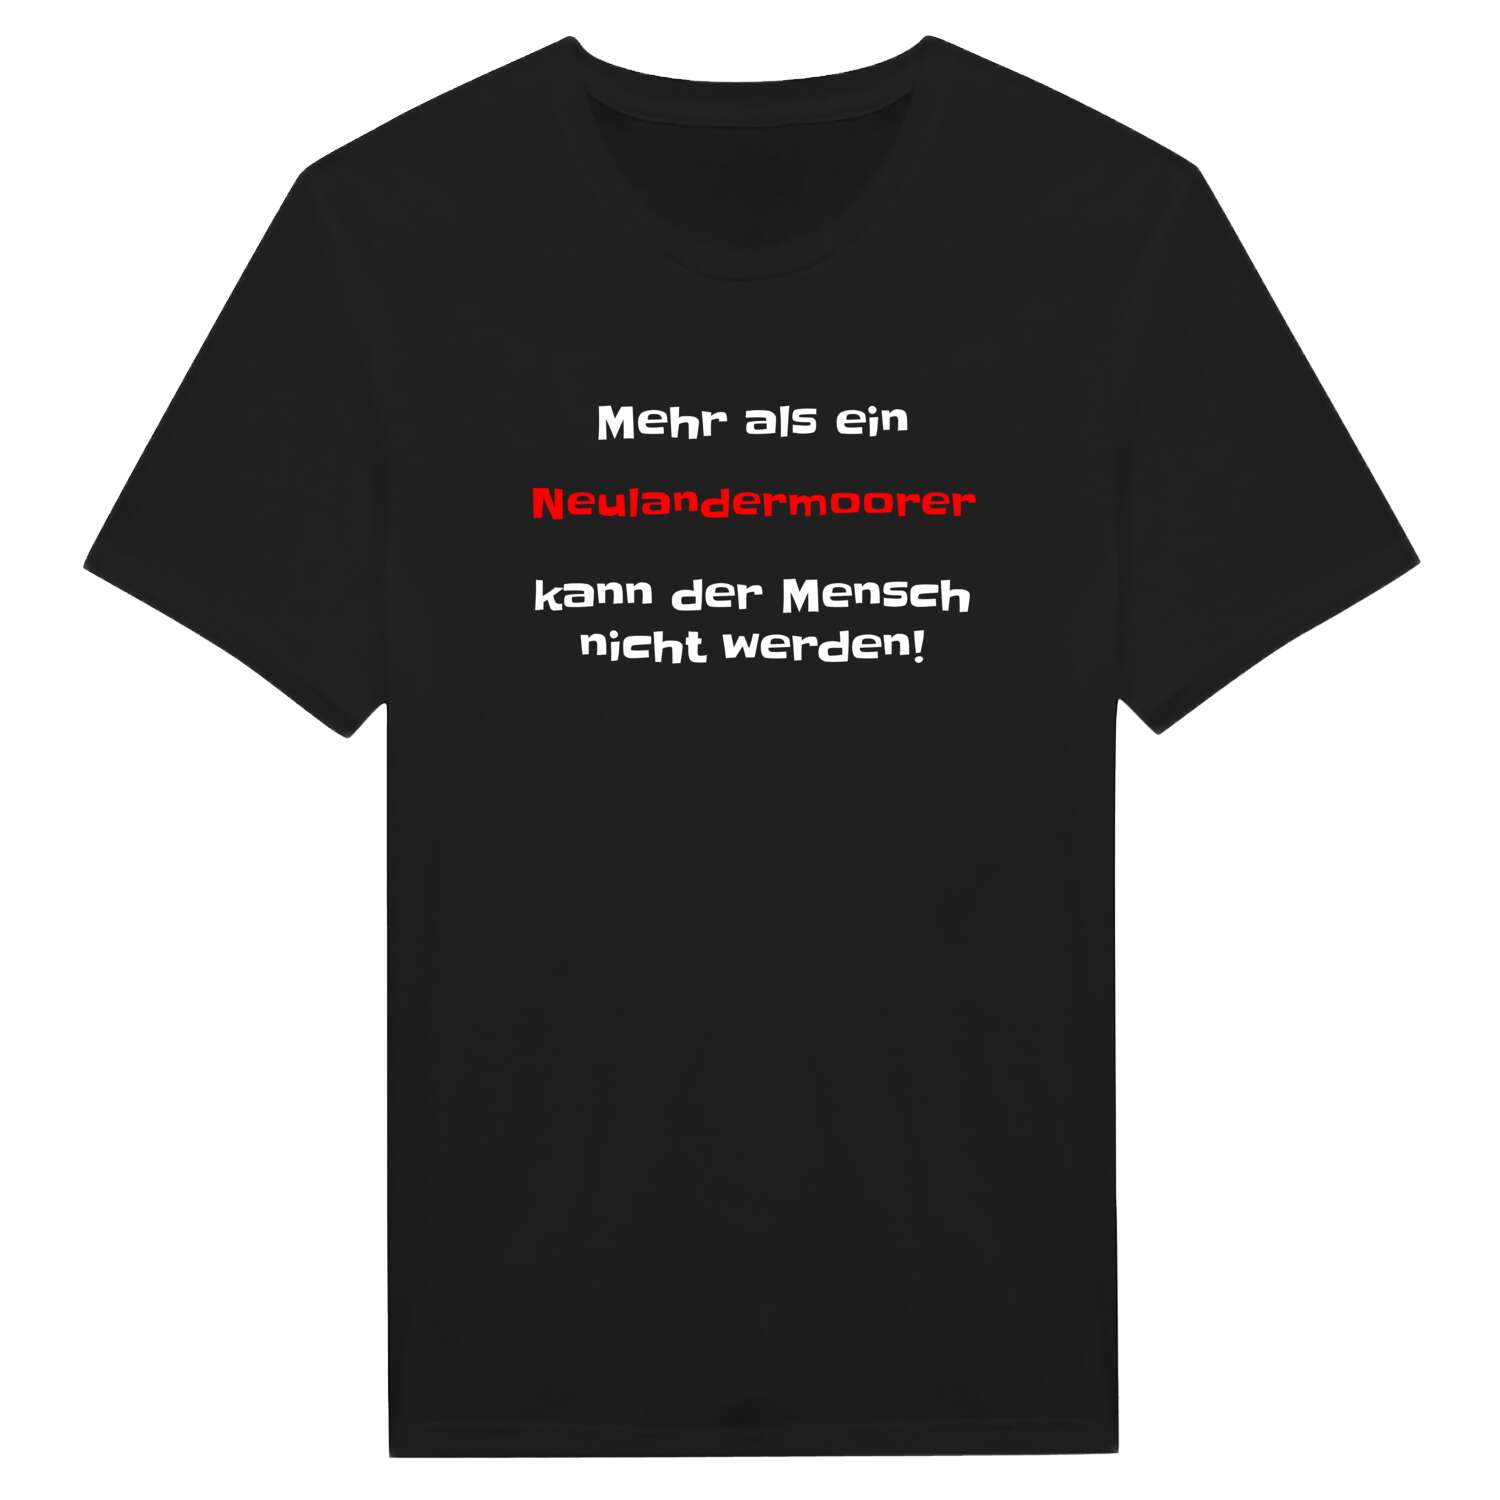 Neulandermoor T-Shirt »Mehr als ein«